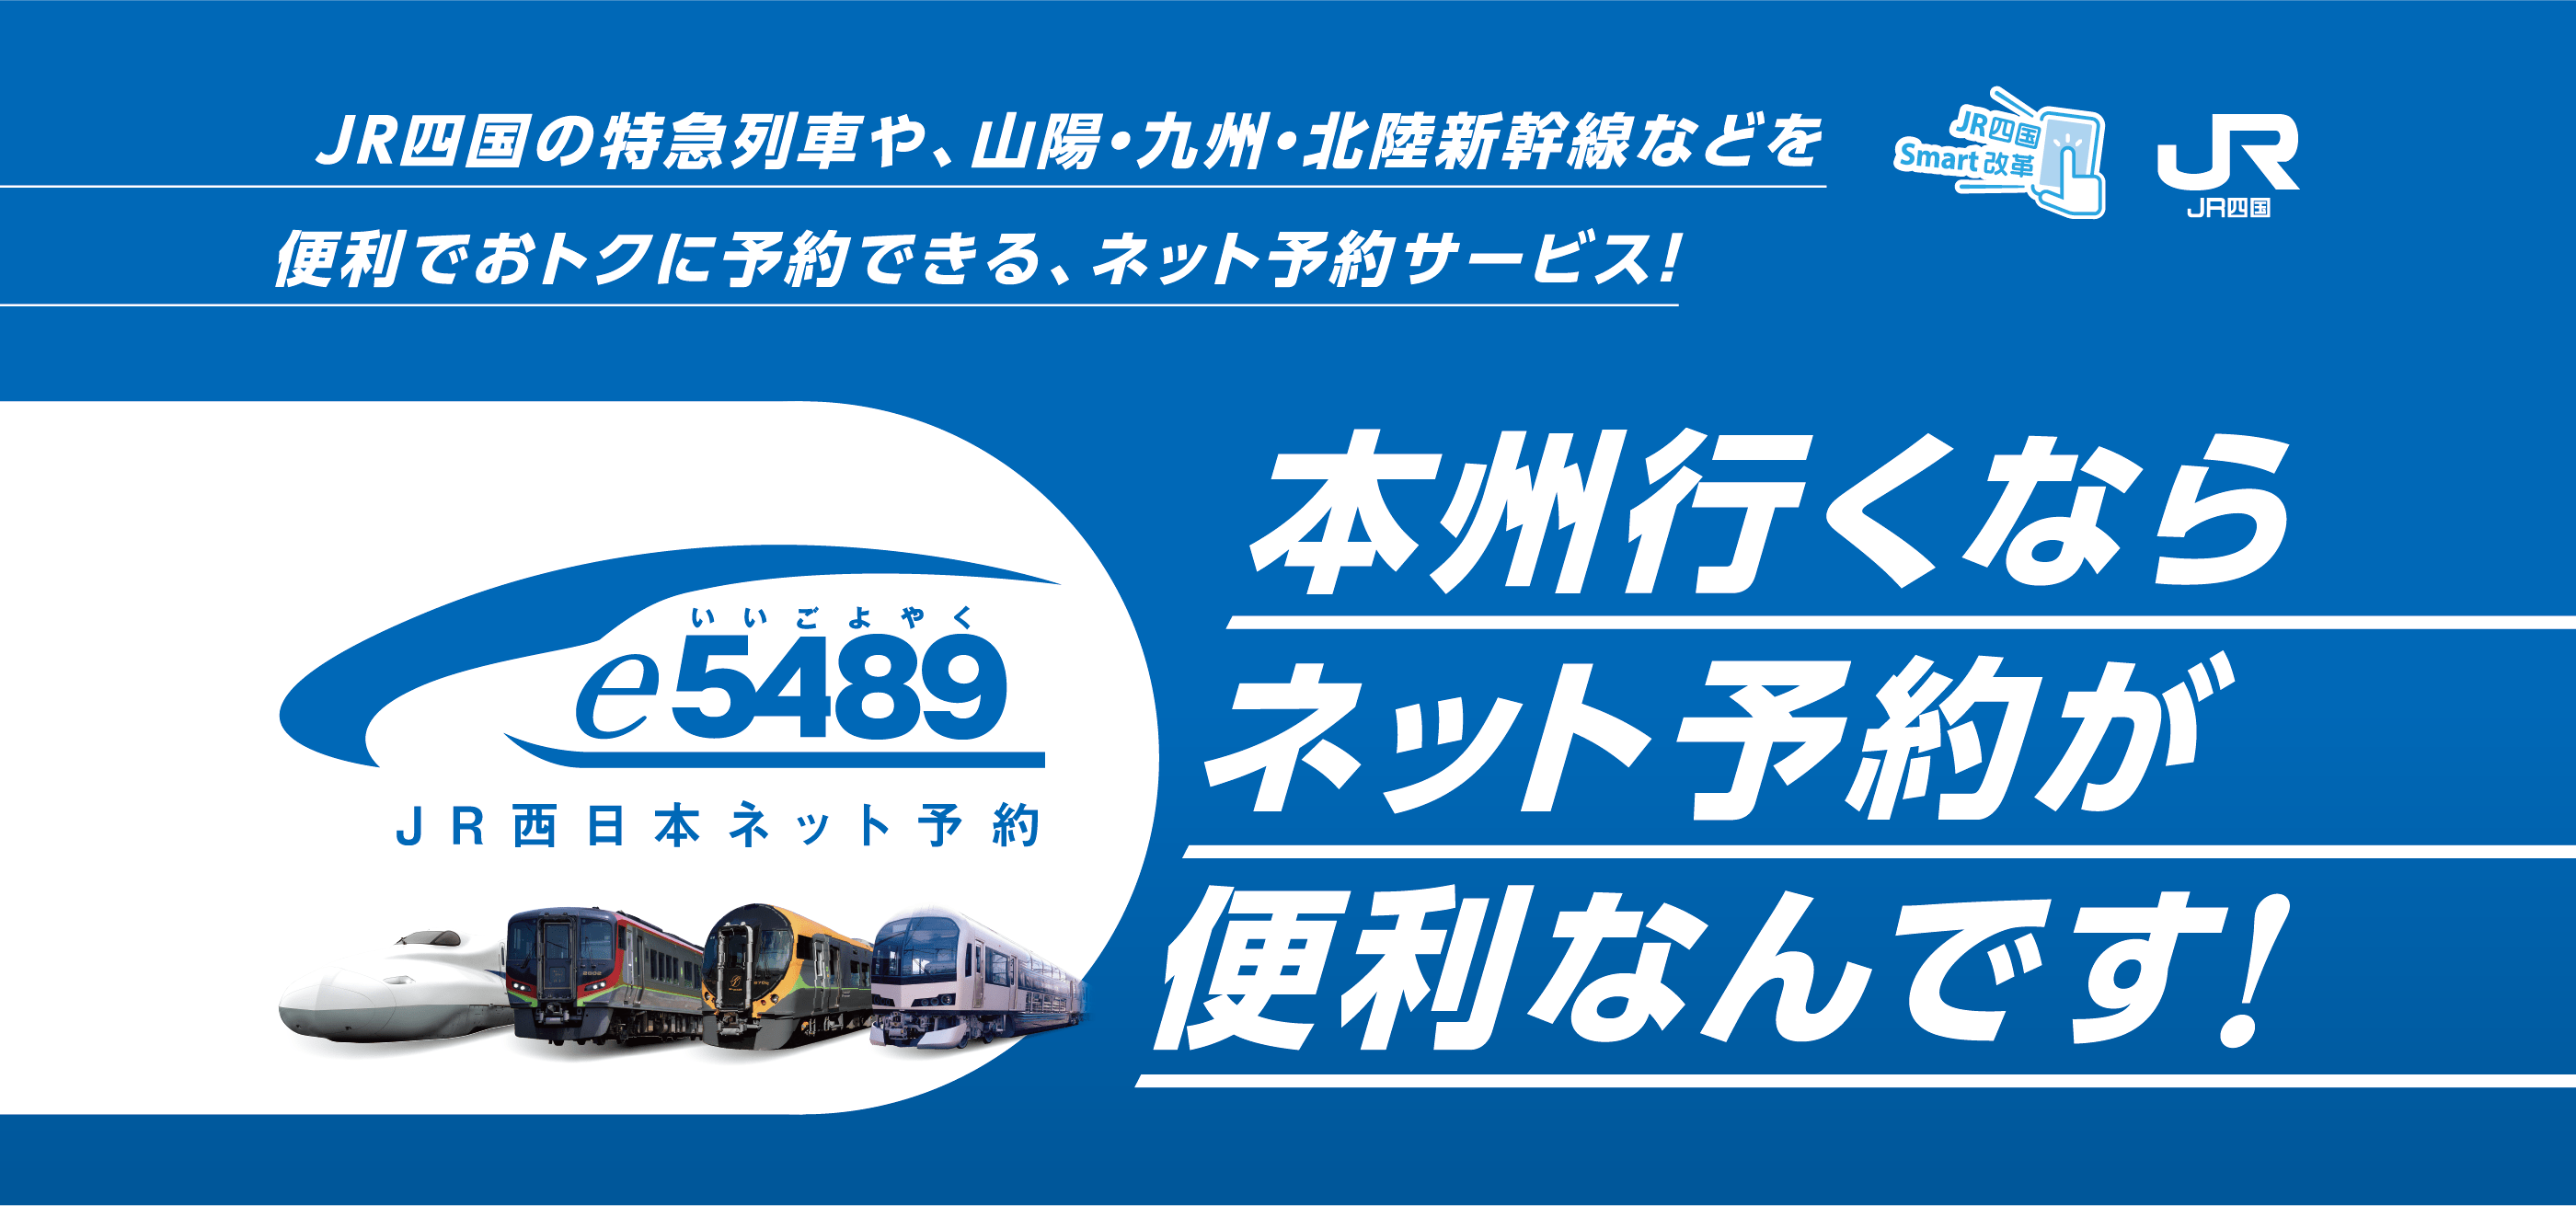 66%OFF!】 AC54 JR 四国 車内片道乗車券 予讃本線用